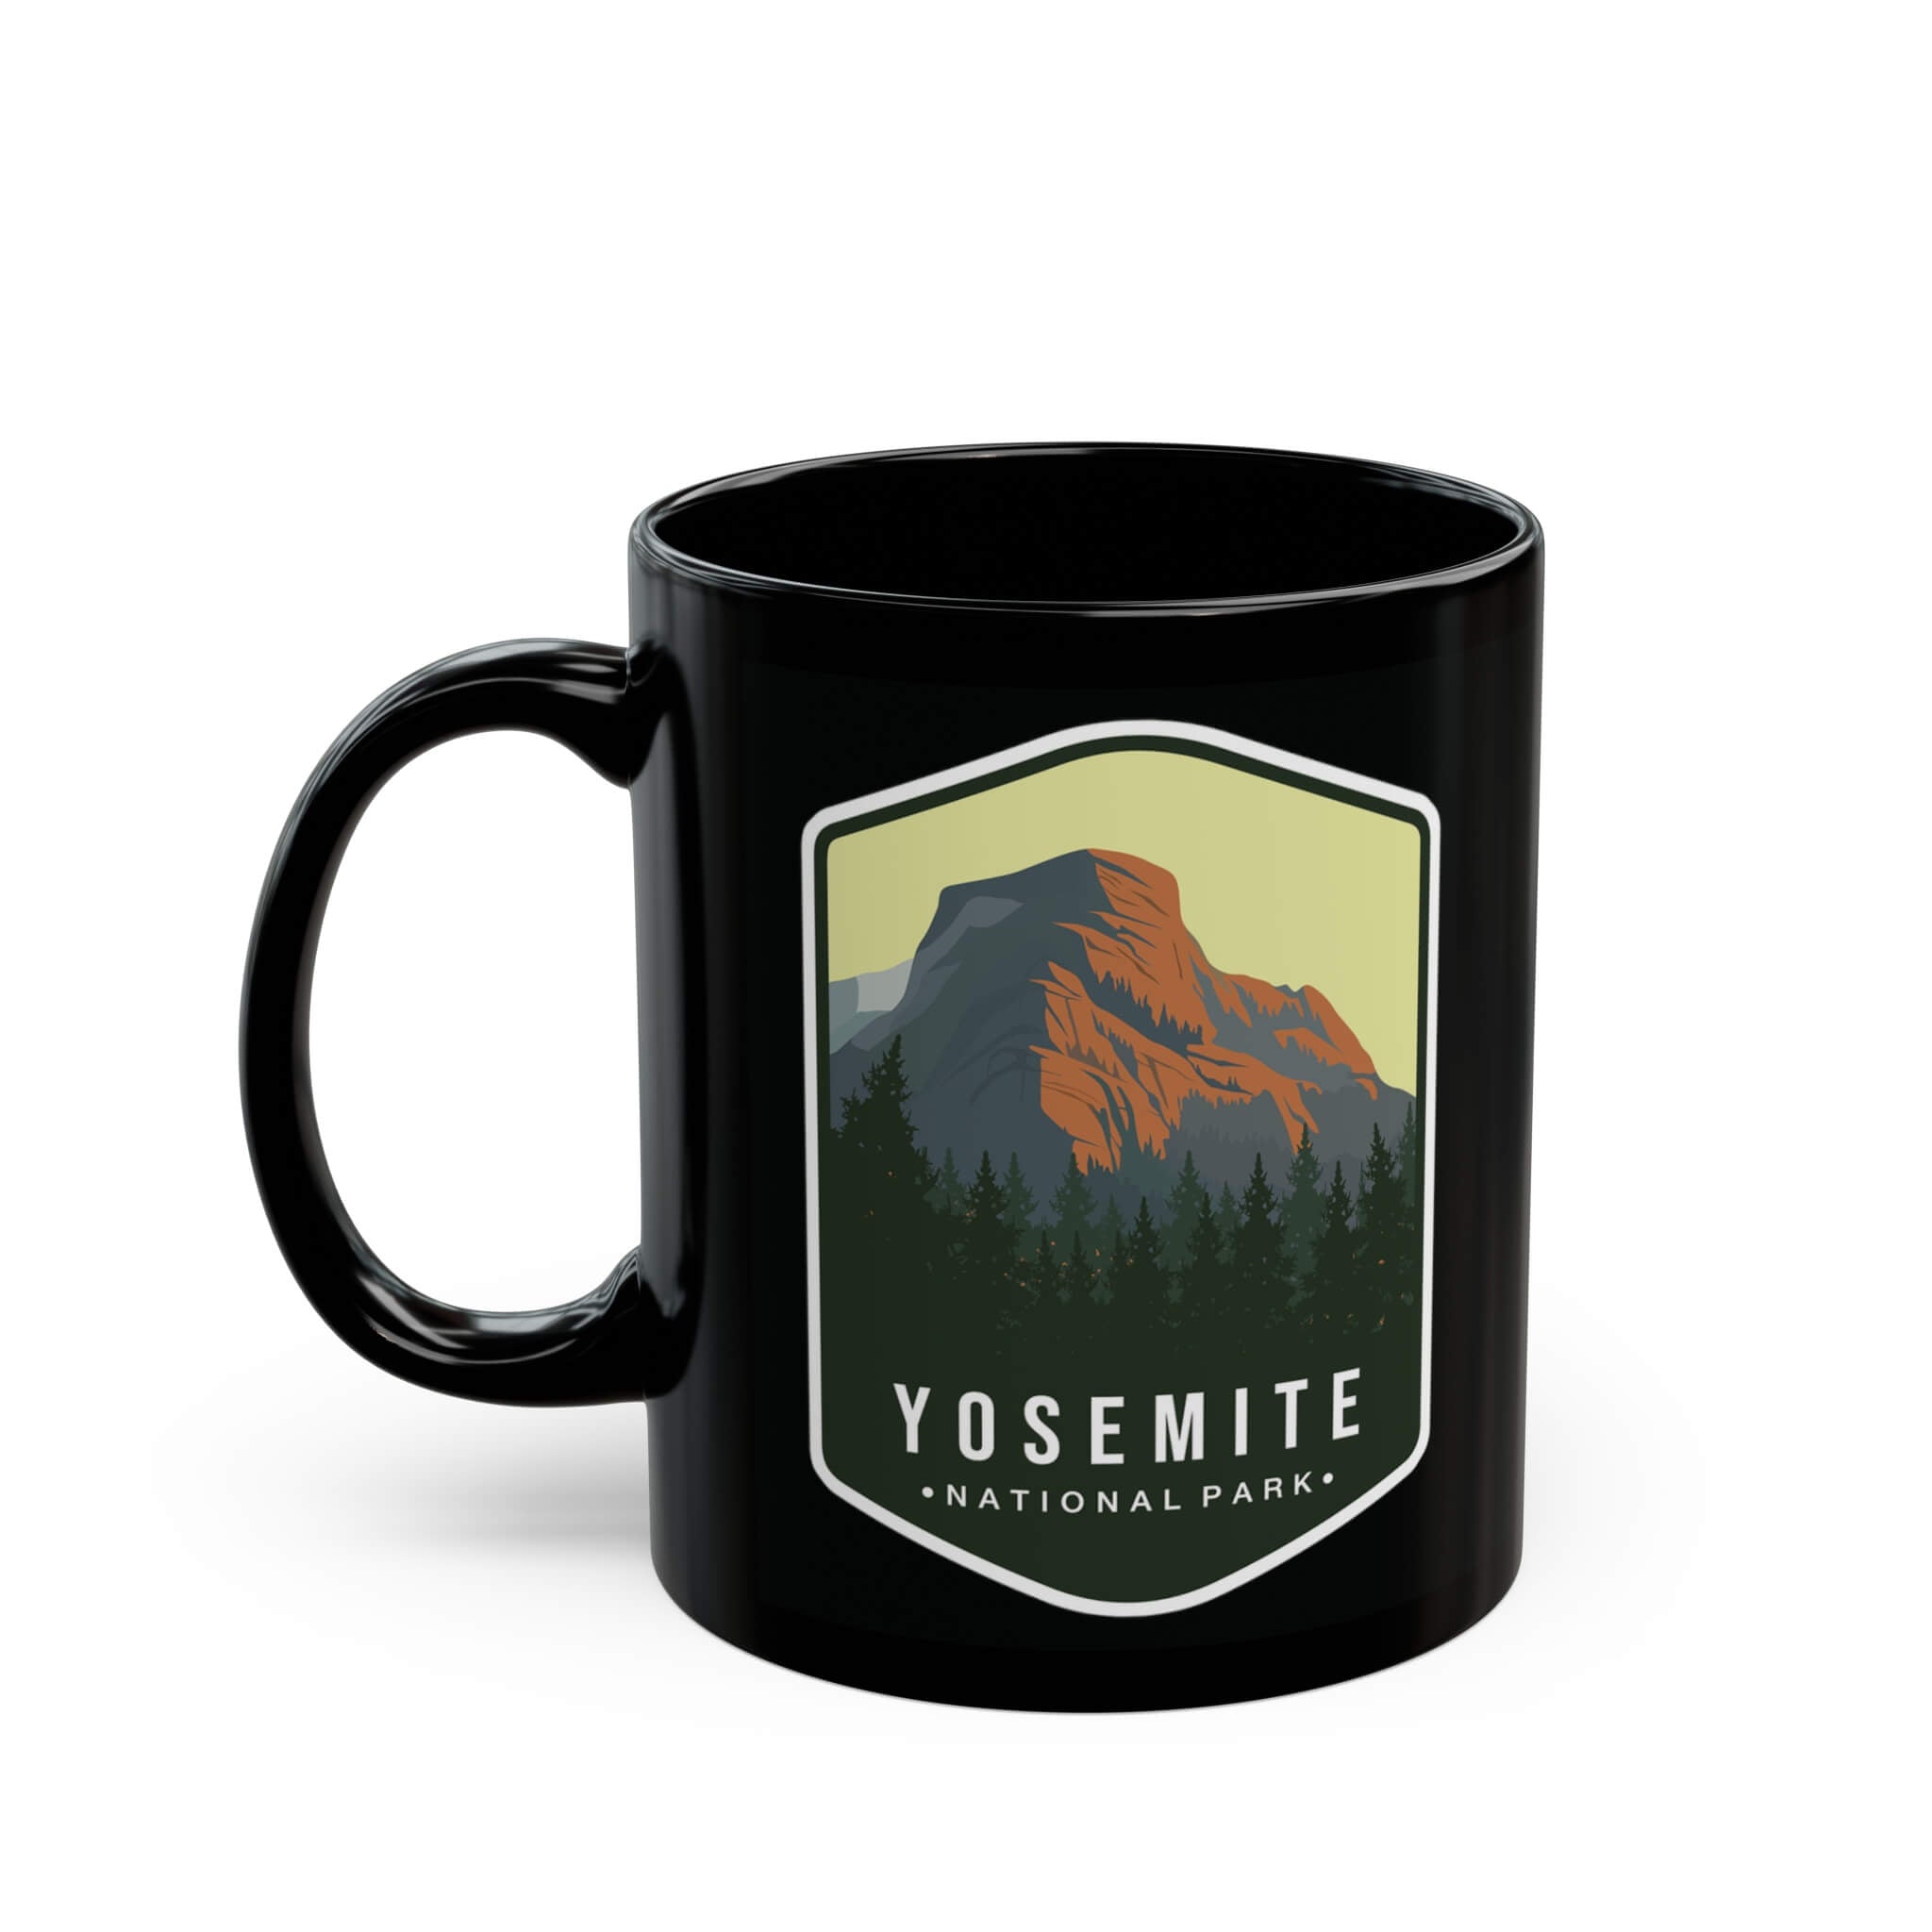 Yosemite National Park Black Ceramic Mug